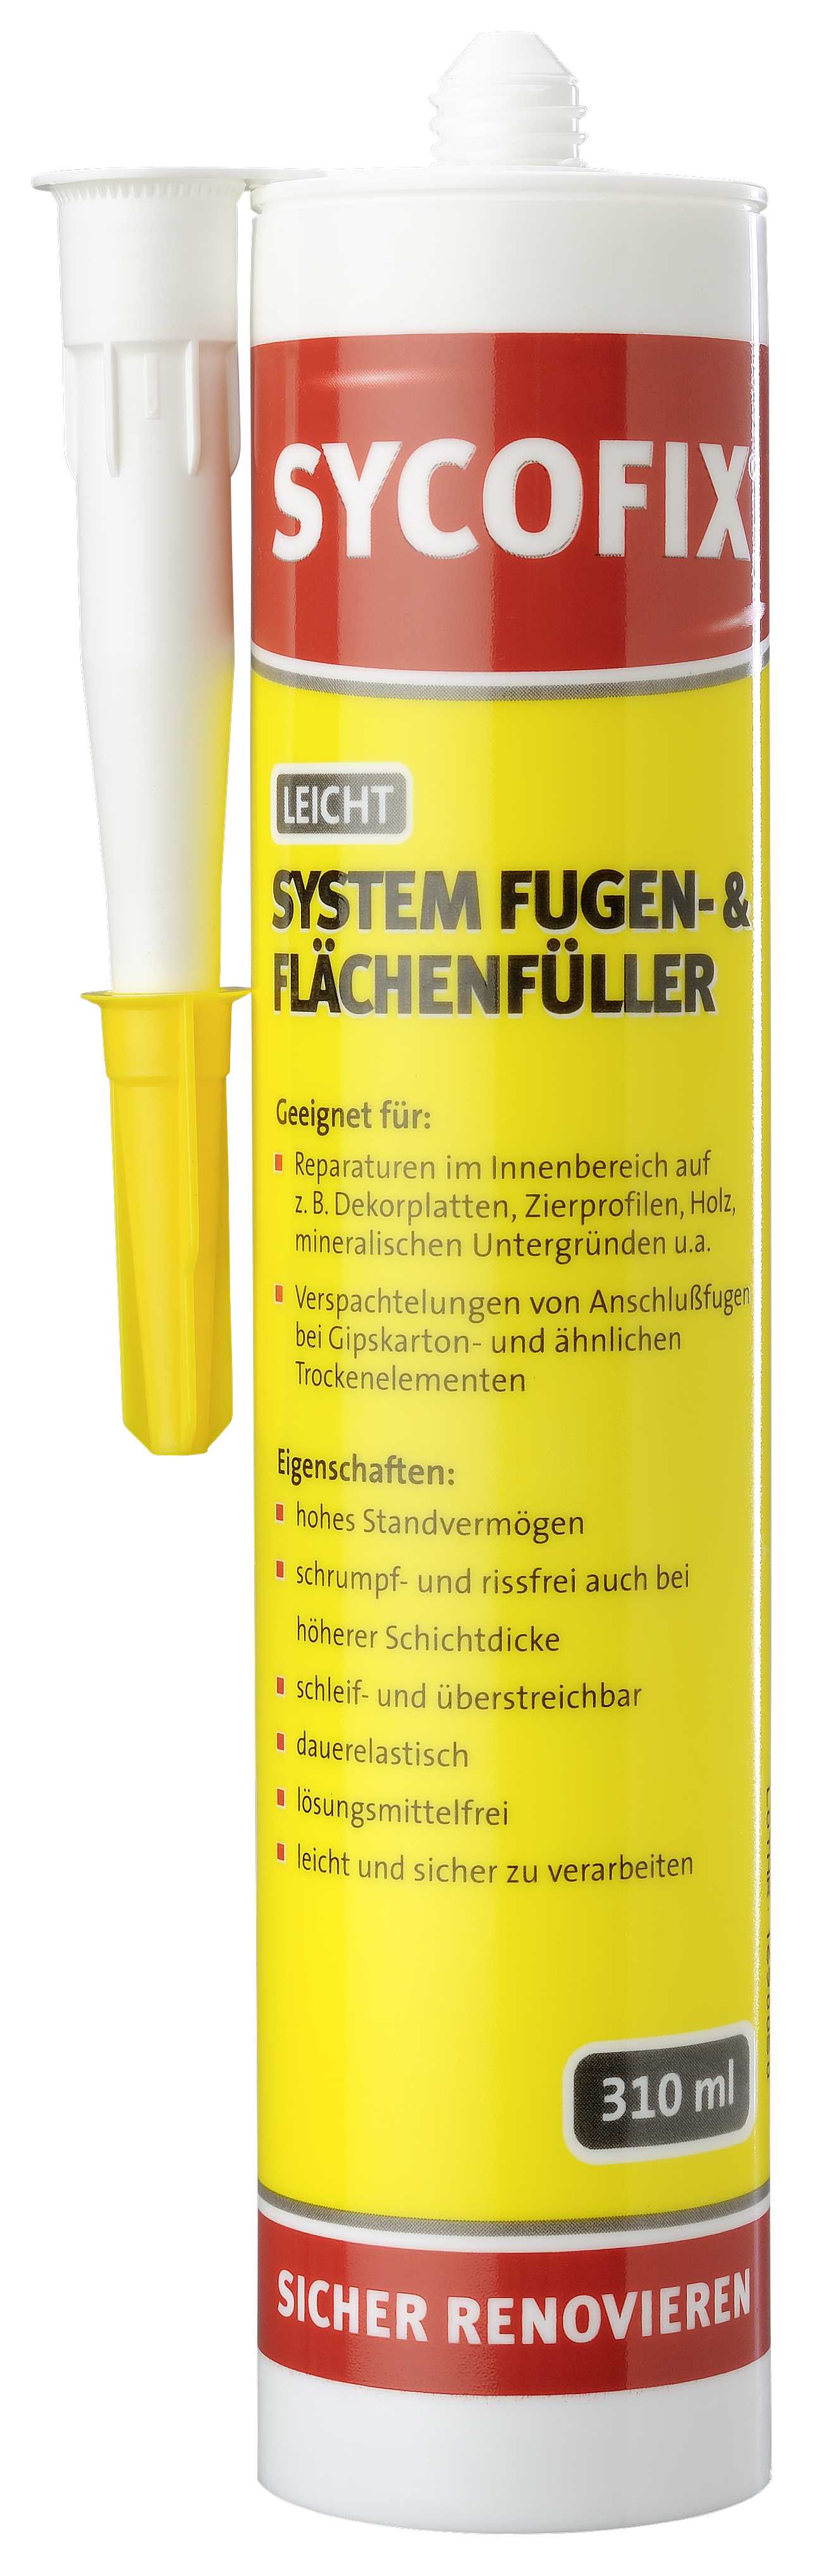 SIEDER GMBH Sycofix® Fugen- und Flächenfüller 310ml System